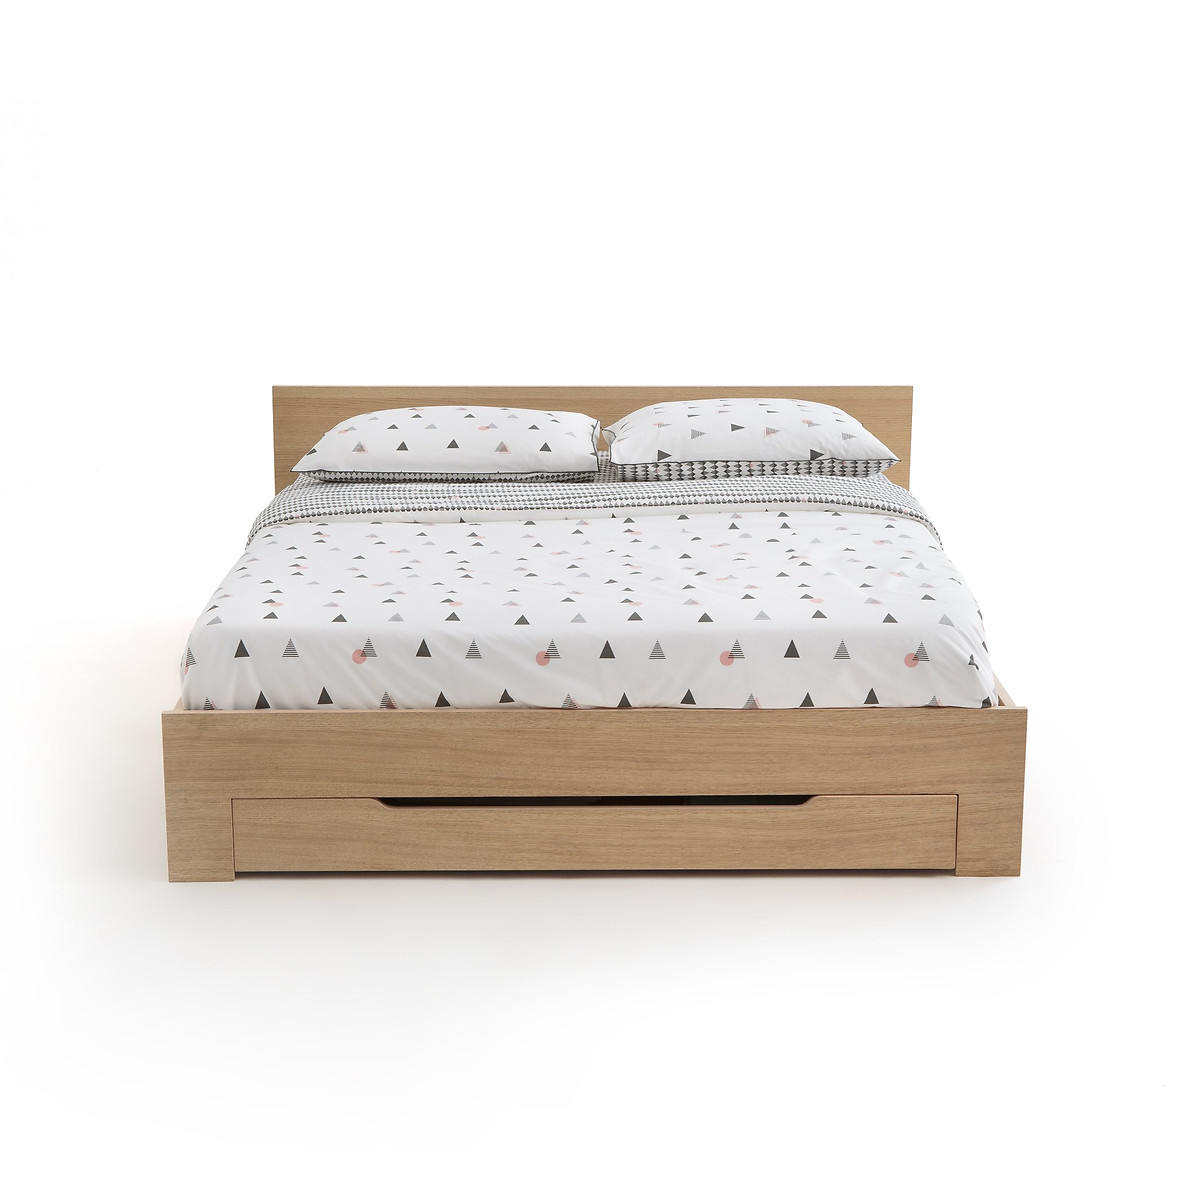 Кровать La Redoute С каркасом для матраса и выдвижным ящиком CRAWLEY 160 x 200 см каштановый, размер 160 x 200 см - фото 4